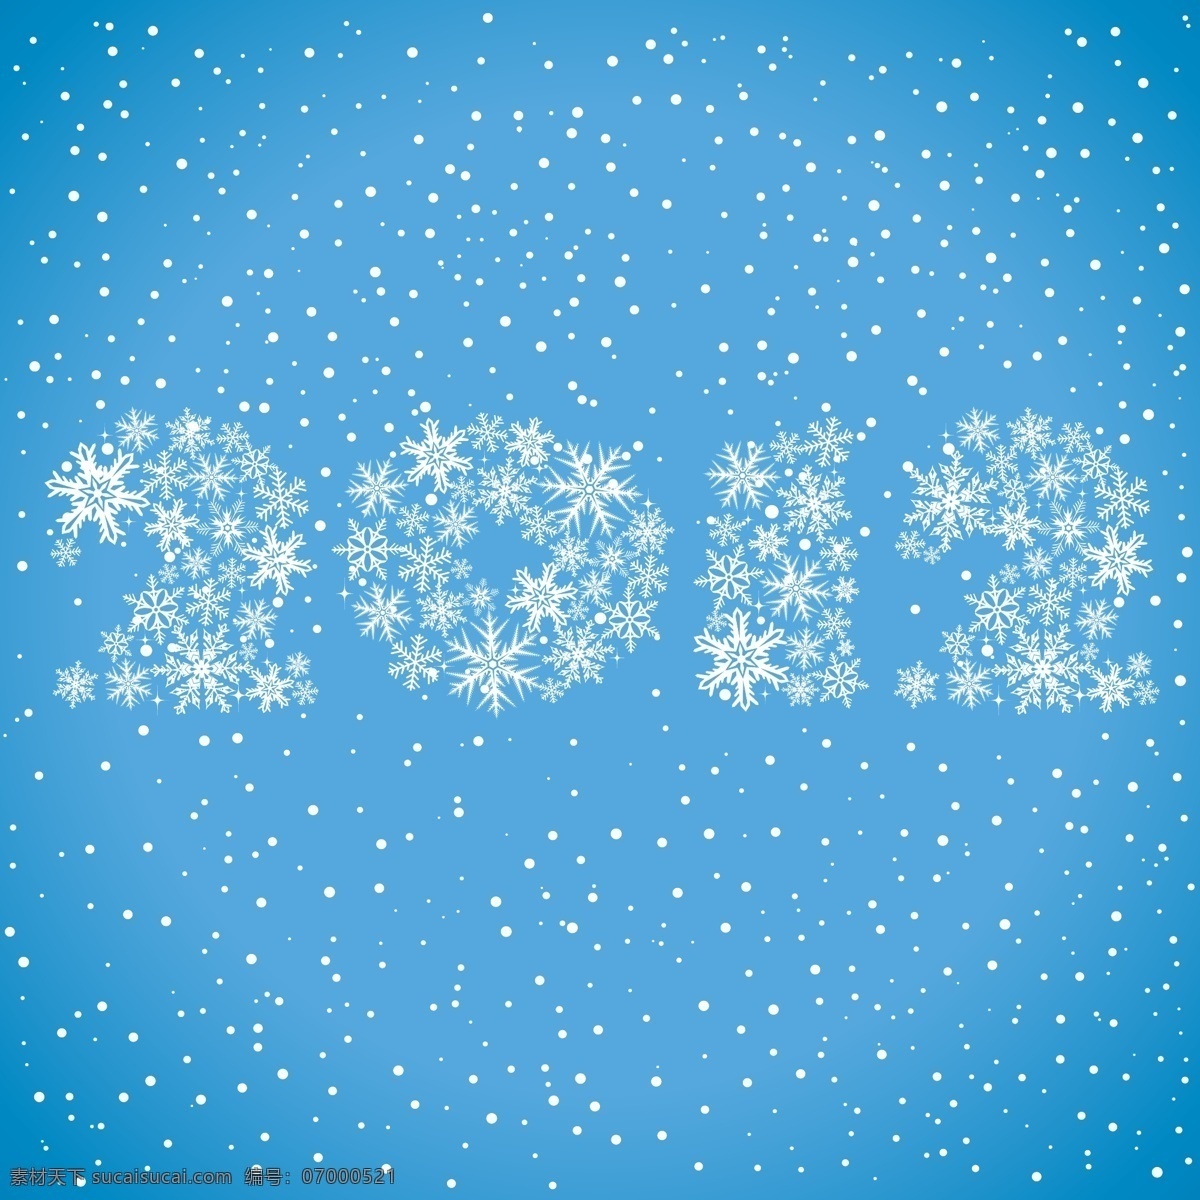 雪花 纹样 背景 2012年 卡通 矢量素材 星星 折纸 矢量图 其他矢量图